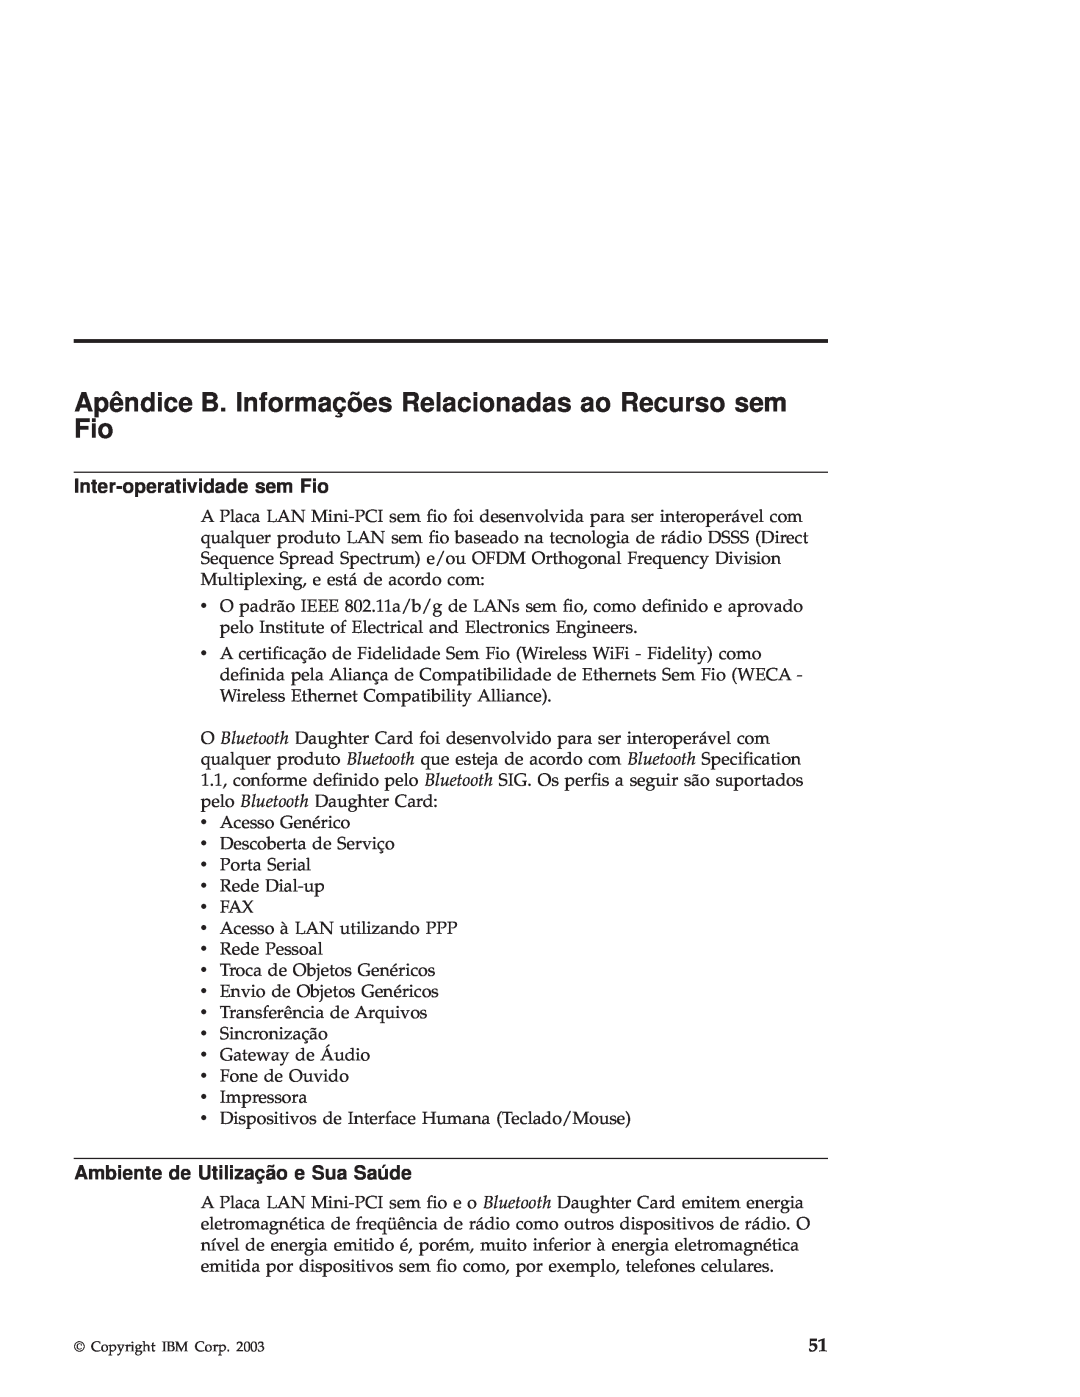 IBM R50 manual Inter-operatividadesem Fio, Ambiente de Utilização e Sua Saúde 